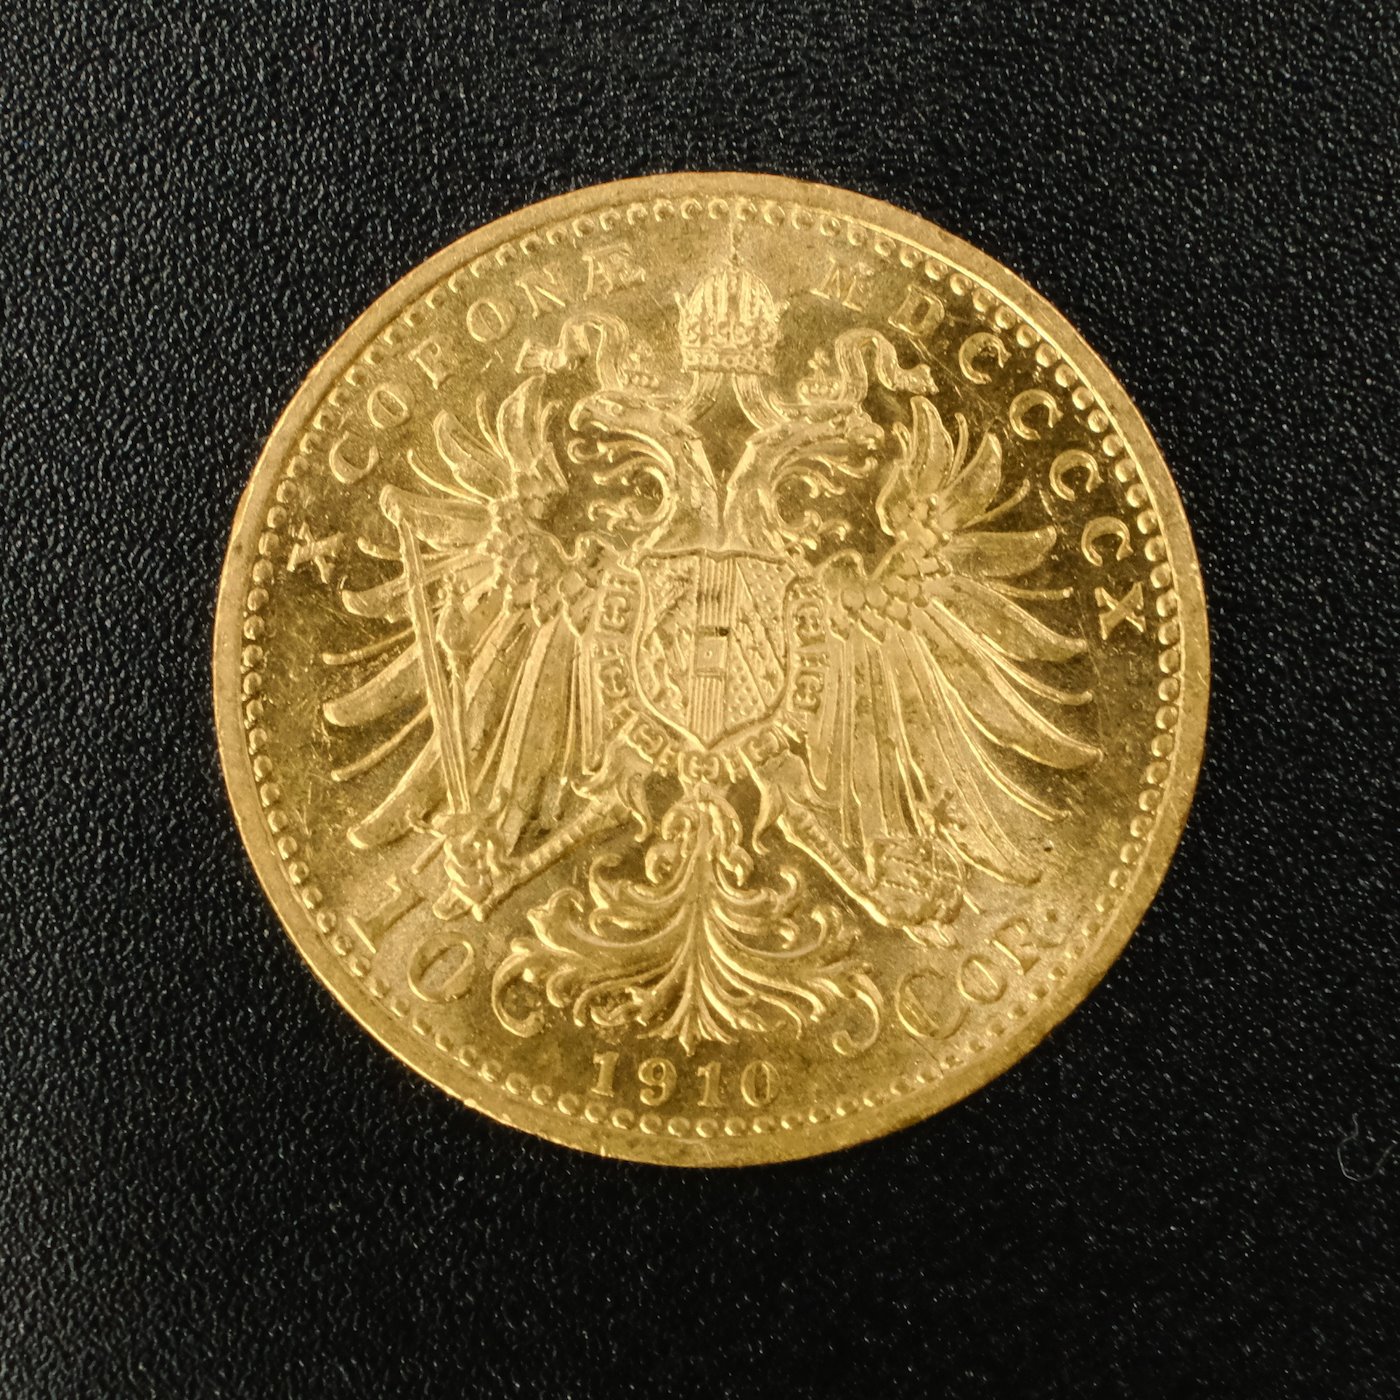 Mince - Rakousko Uhersko zlatá 10 Koruna 1910 rakouská, zlato 900/1000, hrubá hmotnost mince 3,387g